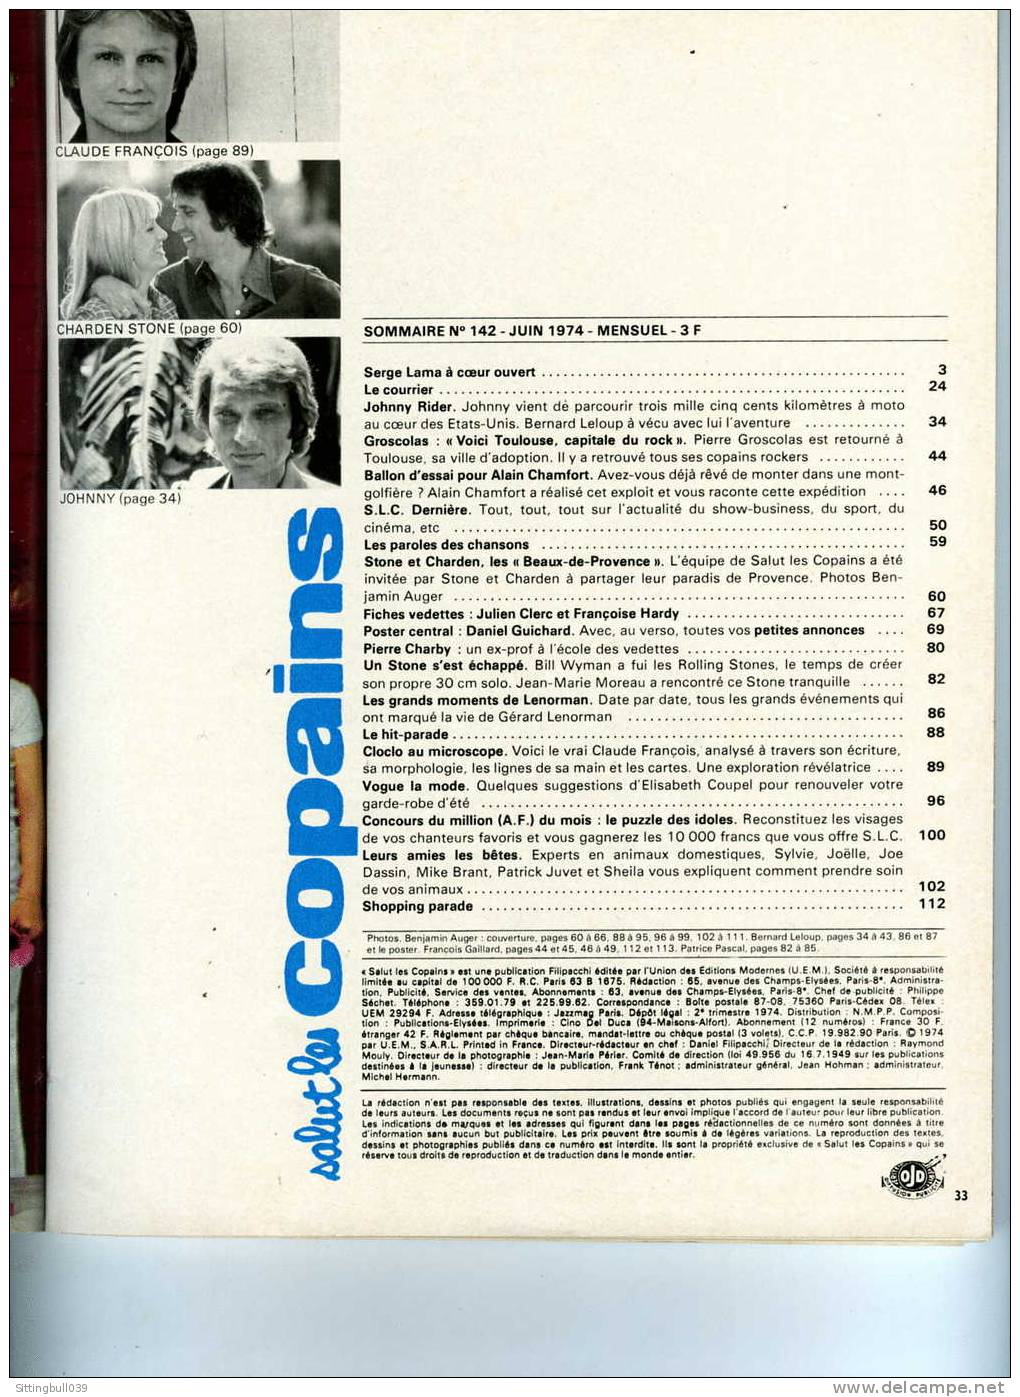 SALUT LES COPAINS N° 142 (SLC) JUIN 1974. CLOCLO, JOHNNY, ALAIN CHAMFORT STONE Et CHARDEN, Etc. SUPERBES PHOTOS. - Música